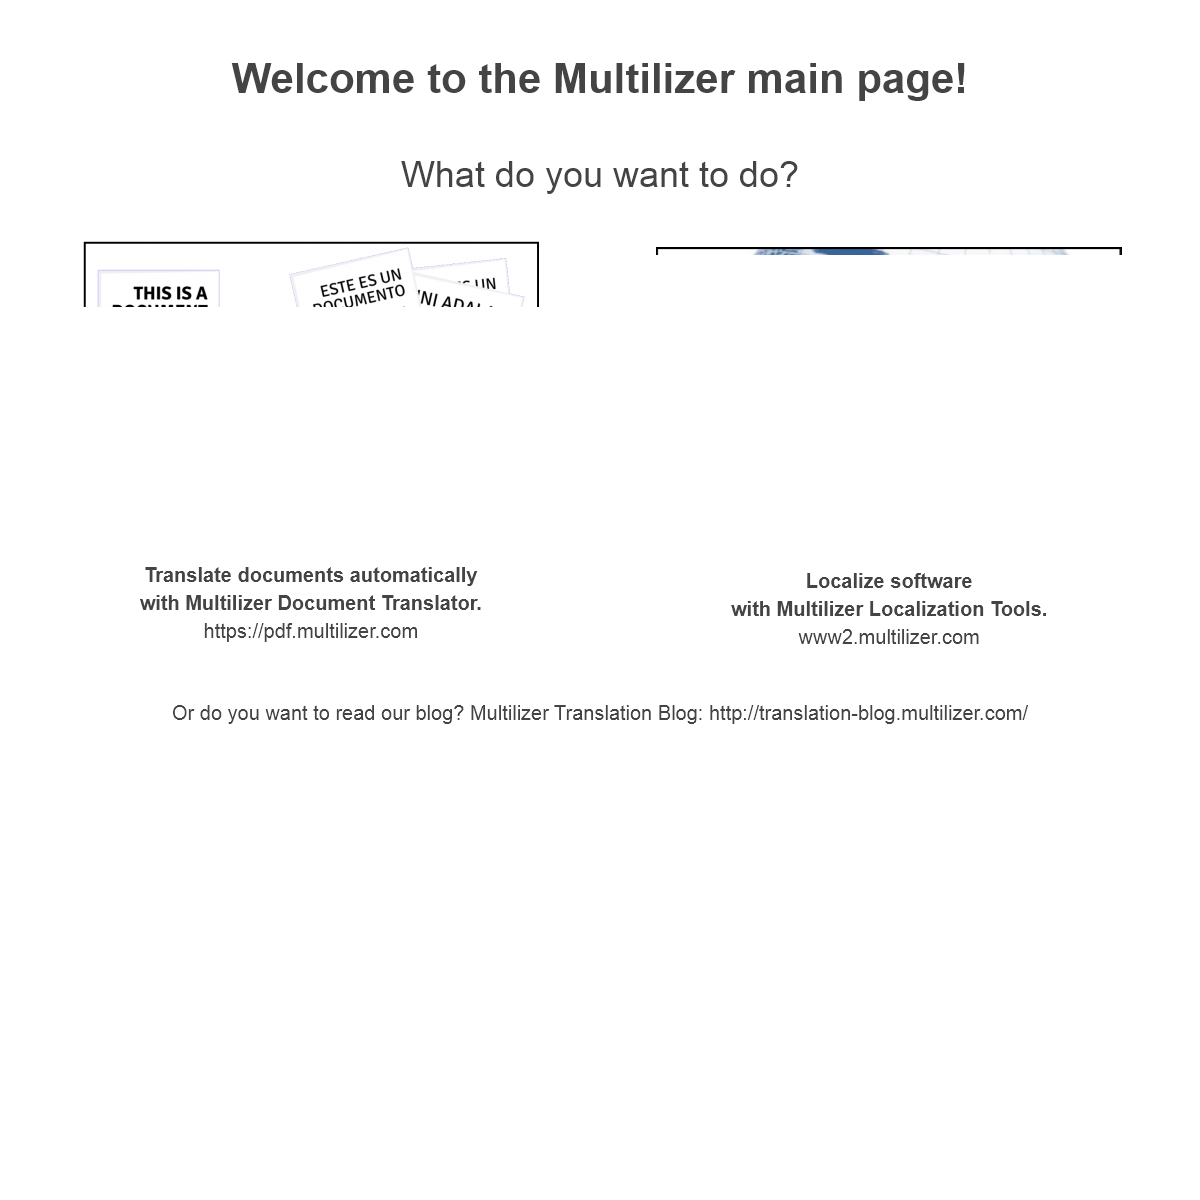 A complete backup of multilizer.com